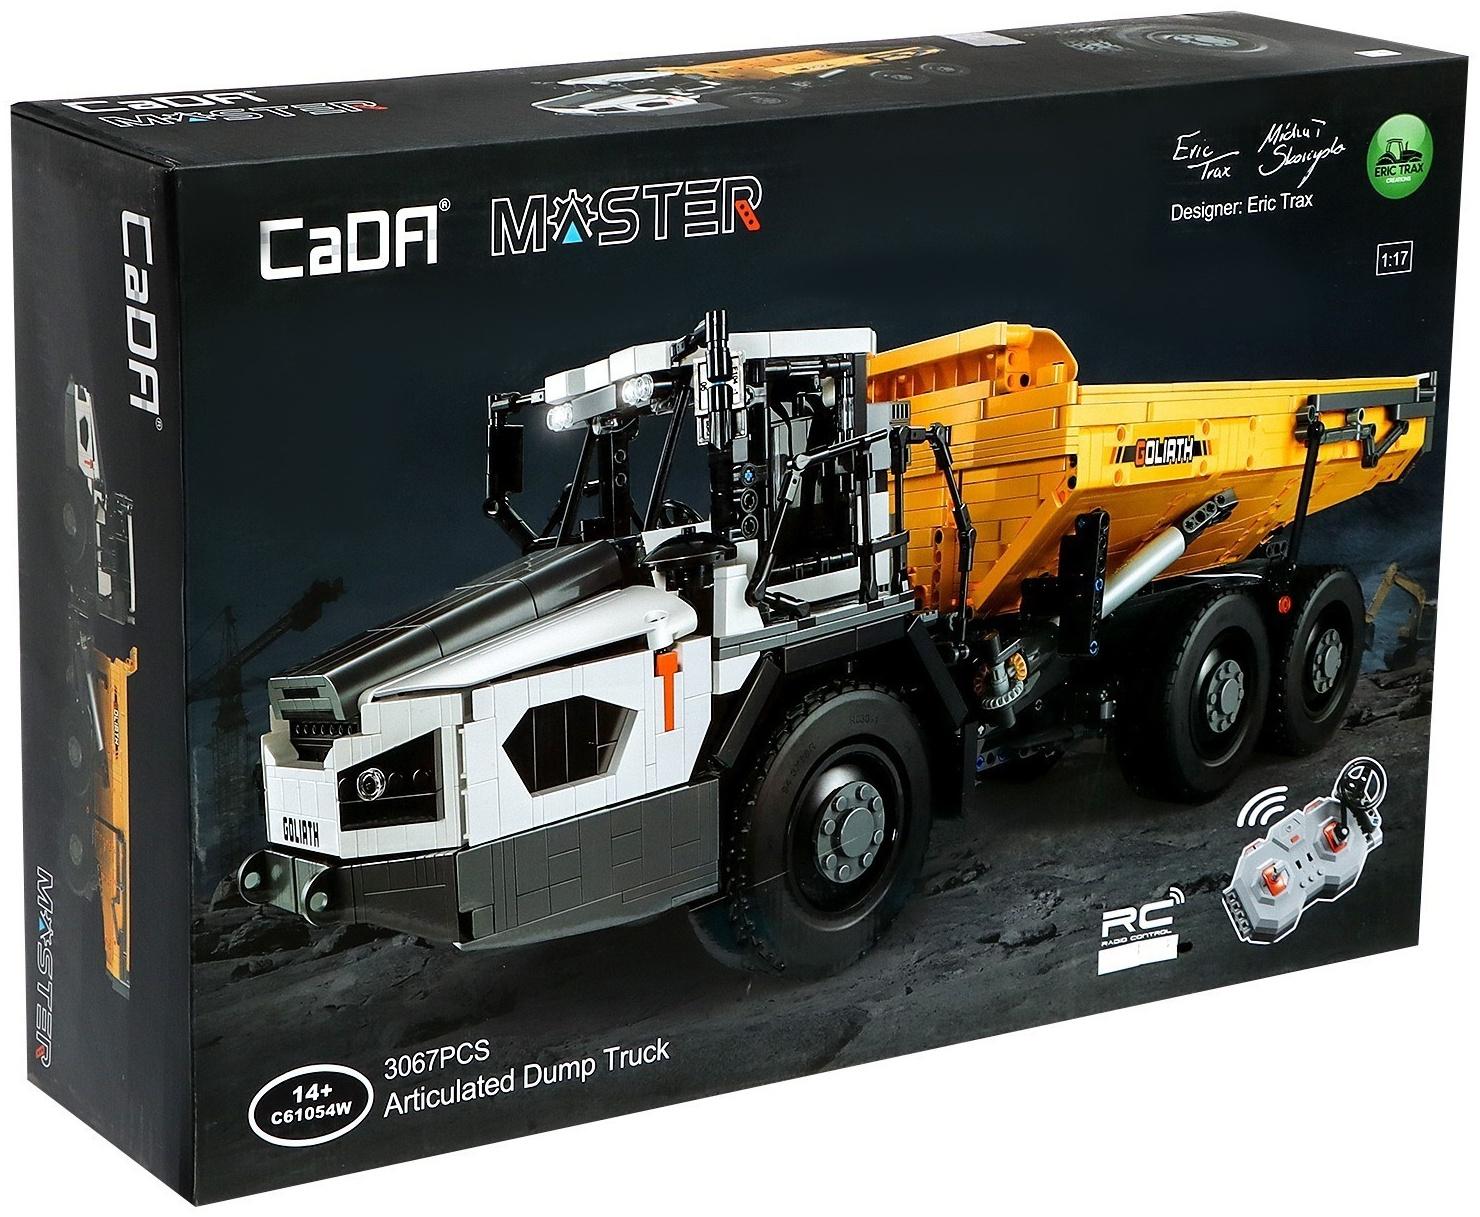 Конструктор радиоуправляемый CaDA 1:17 «Строительный грузовик» C61054W / 3067 деталей